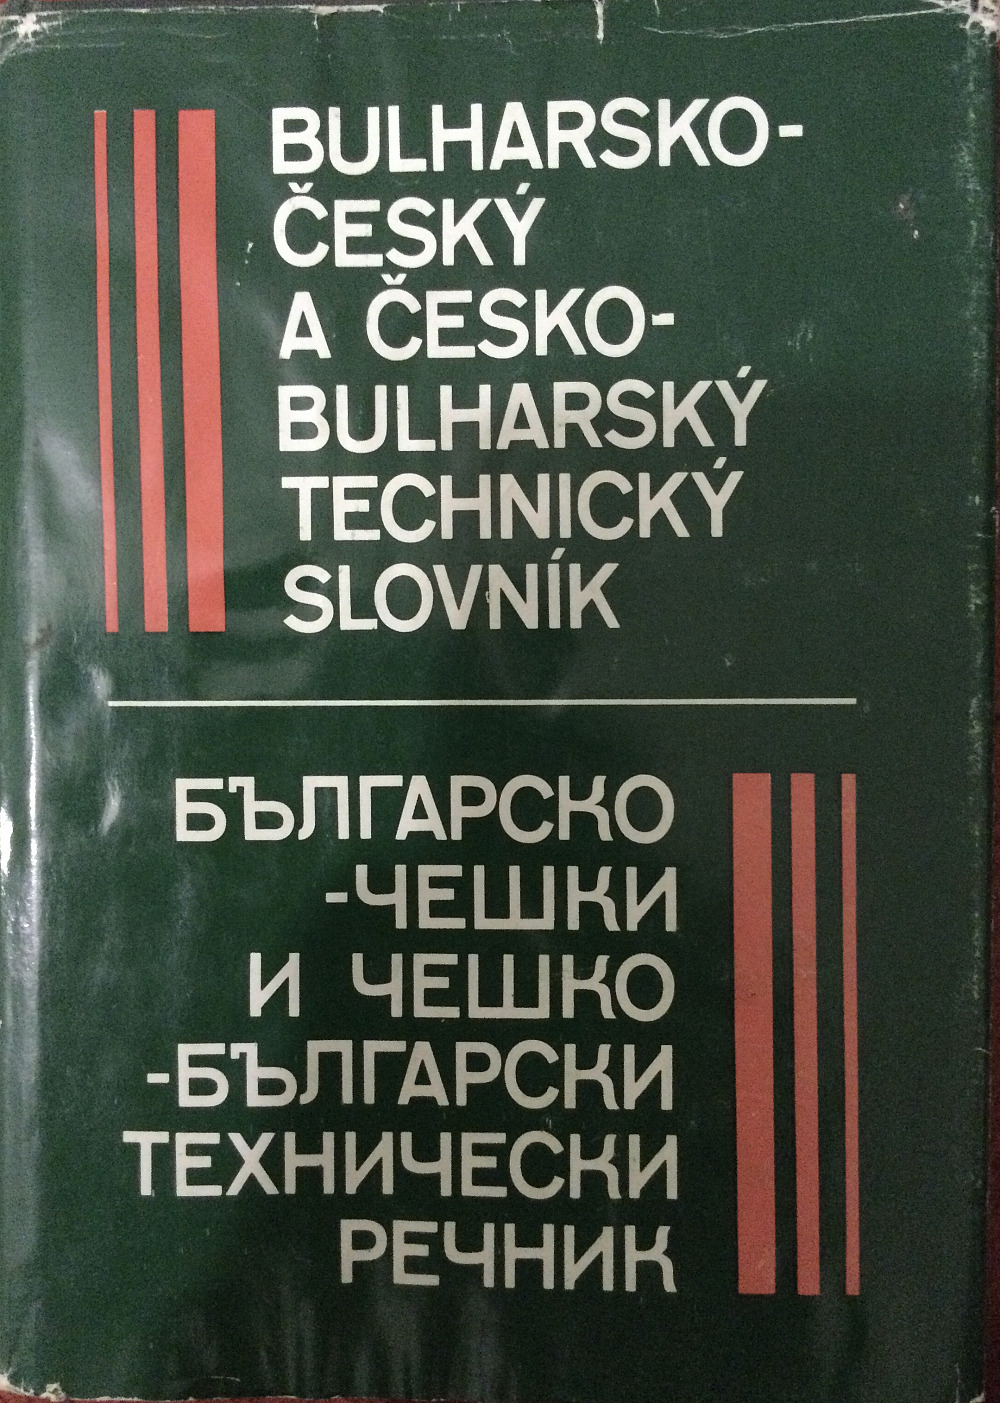 Bulharsko - český a česko - bulharský technický slovník